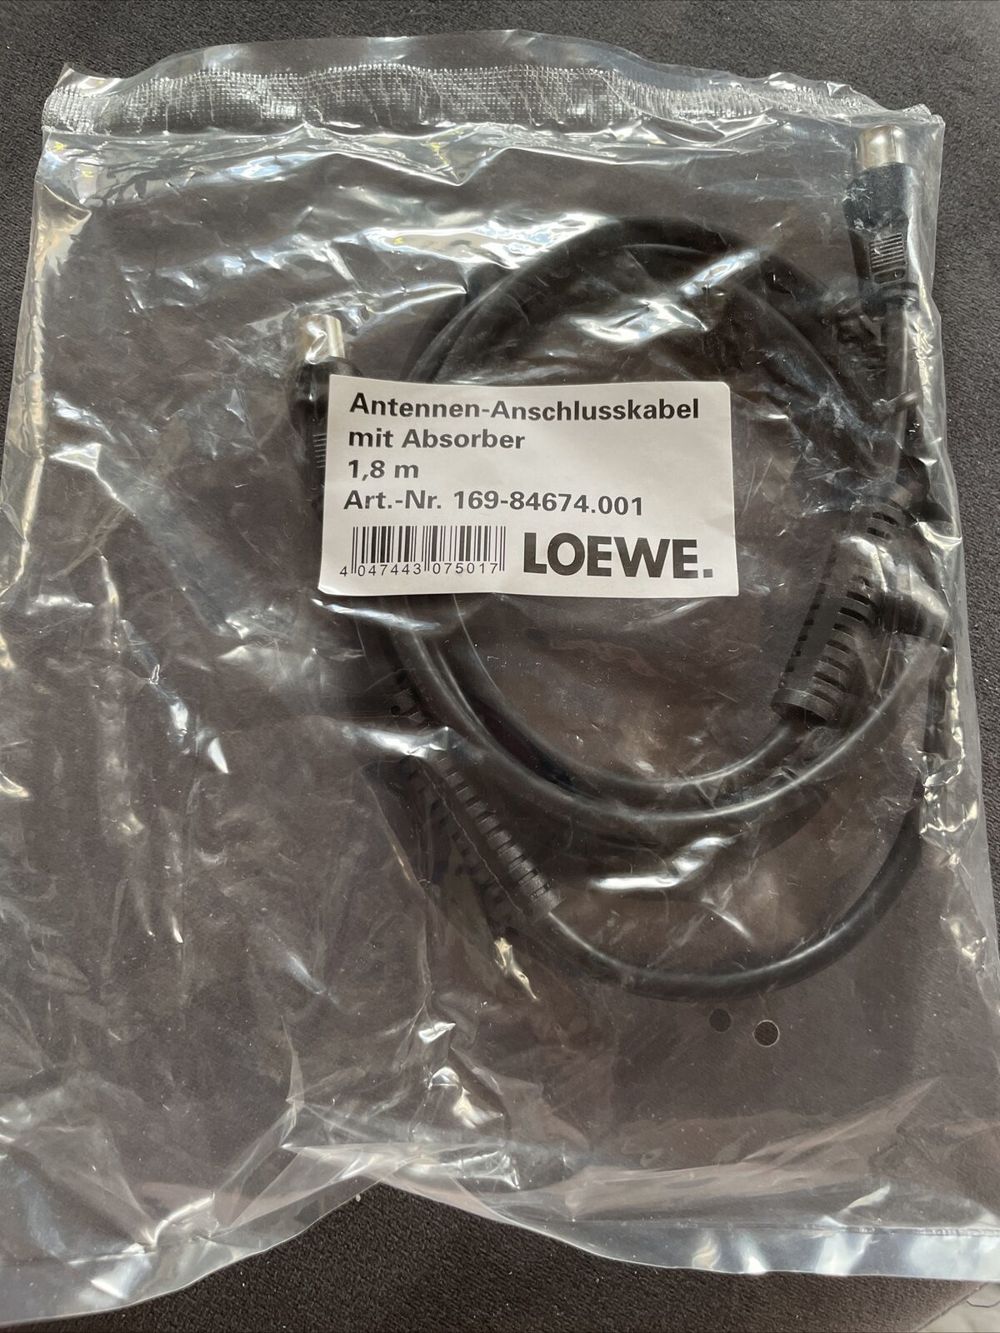 Loewe Antennen-Anschlusskabel mit Absorber 1,8m